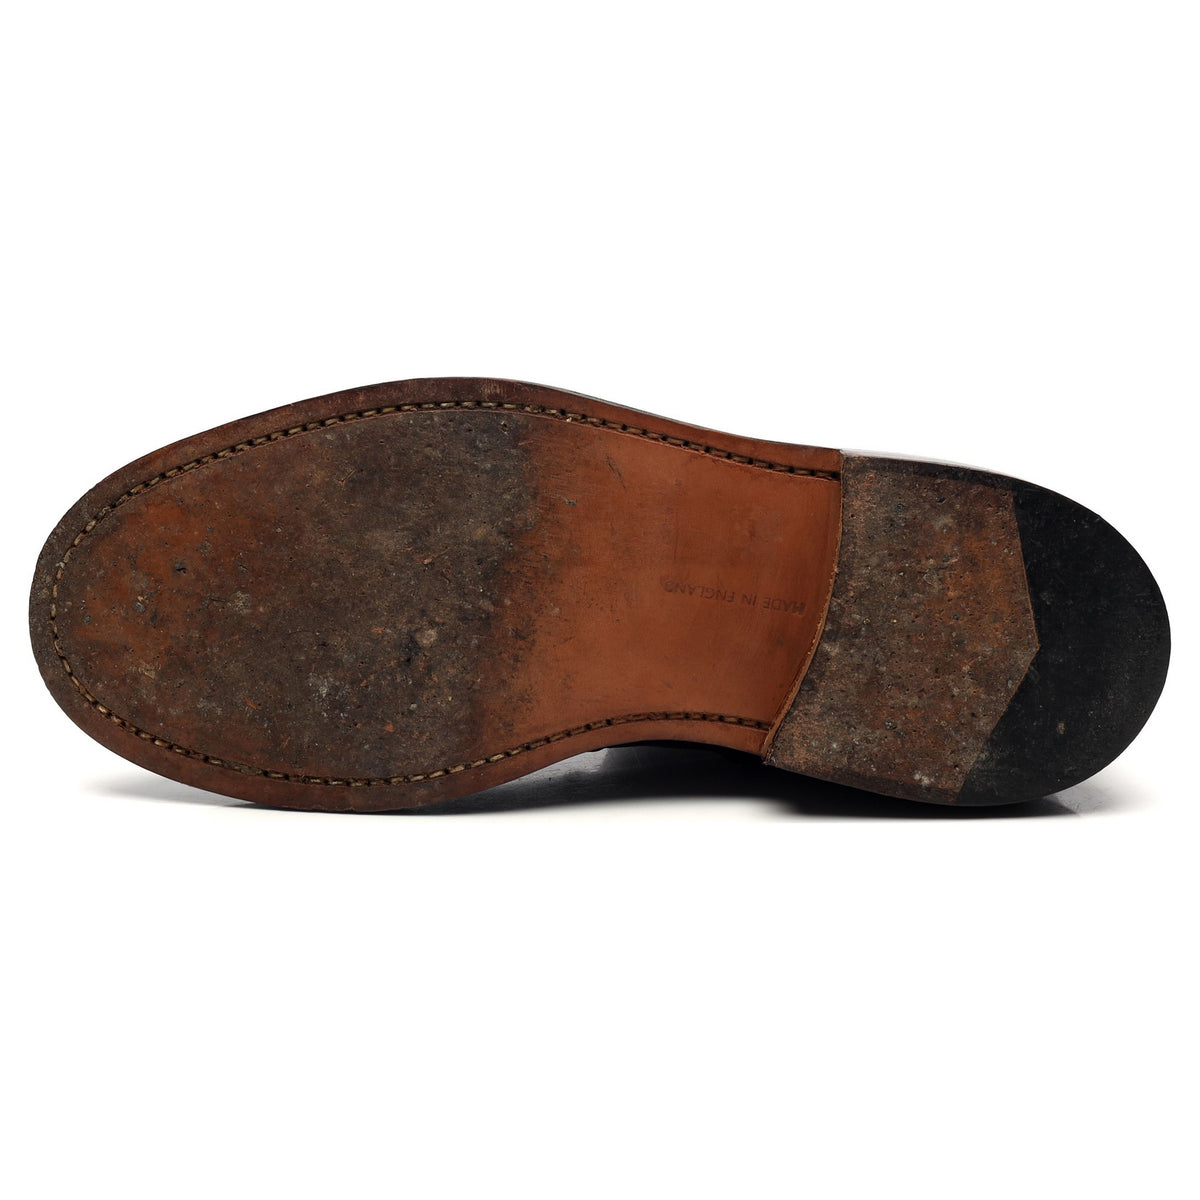 &#39;Angus&#39; Dark Brown Leather Zip Up Boots UK 8